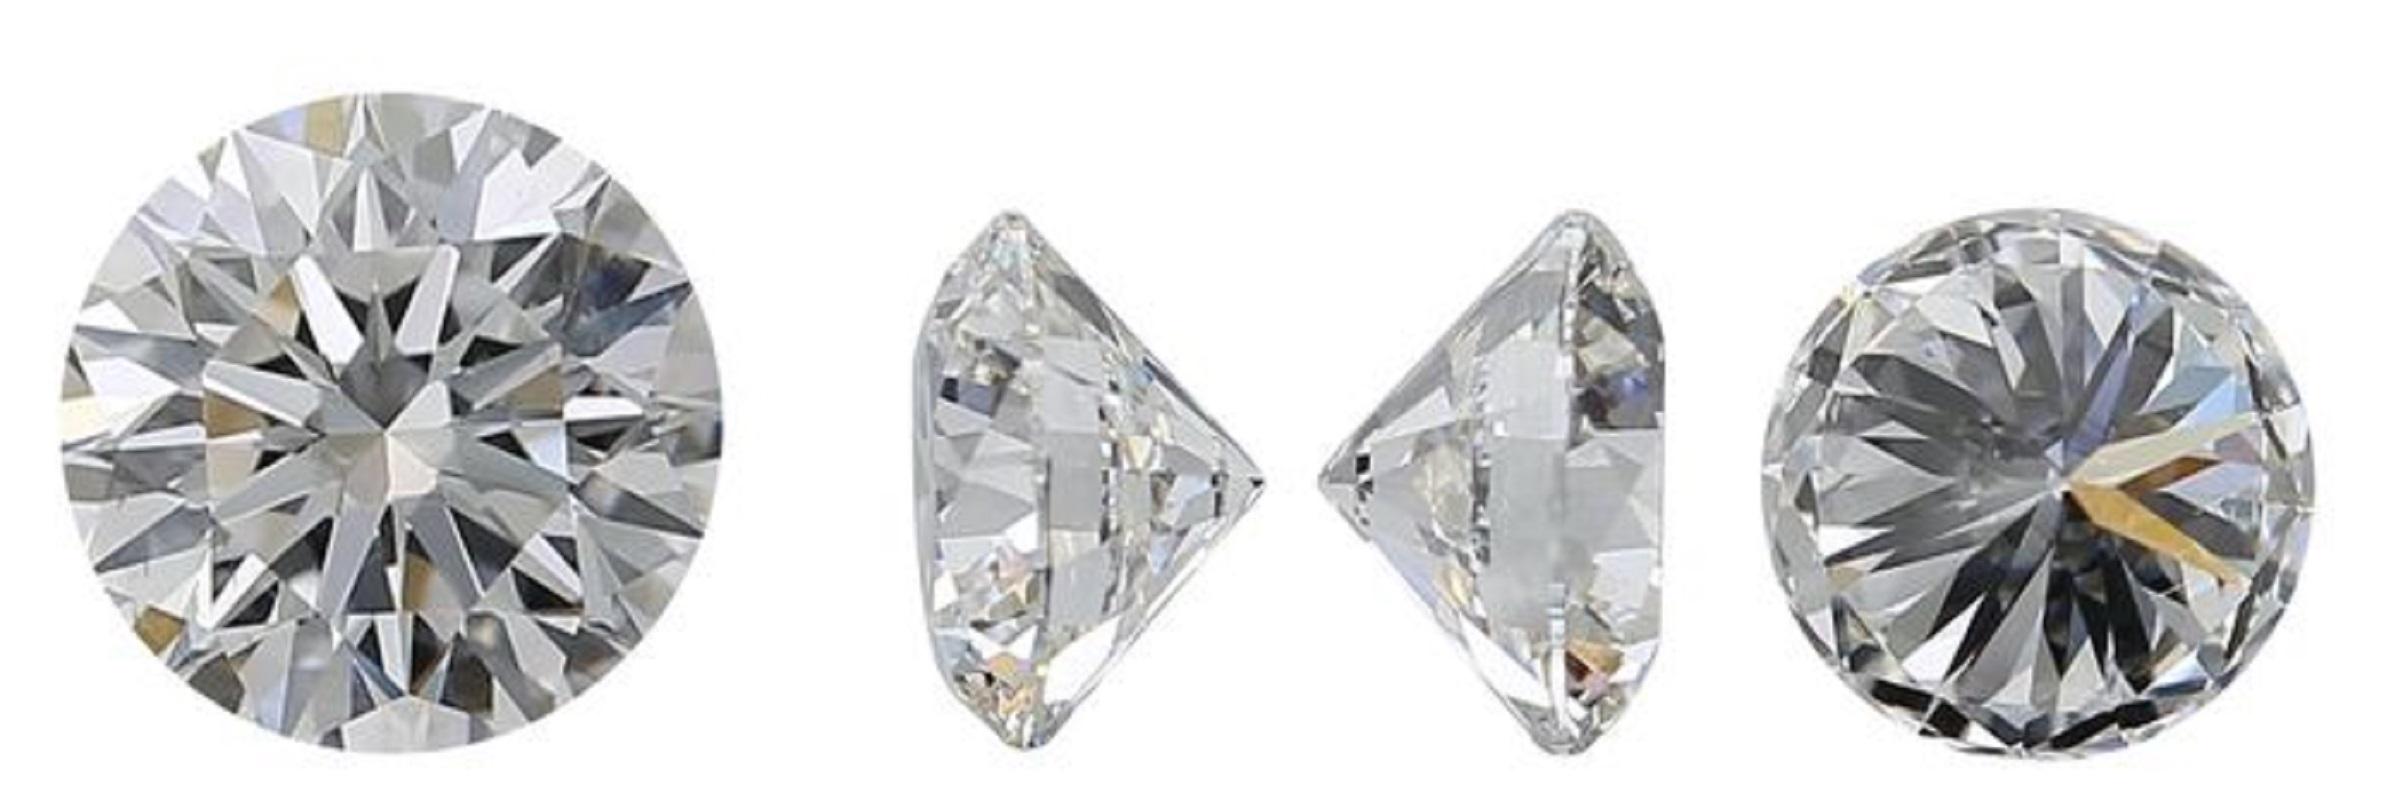 Diamant rond brillant de 0,41 carat I SI2, classé par le laboratoire GIA, dont la taille et la brillance sont excellentes. Ce diamant est accompagné d'un certificat GIA et d'un numéro d'inscription au laser.

GIA 1447029101

Sku : DSPV-155721-11